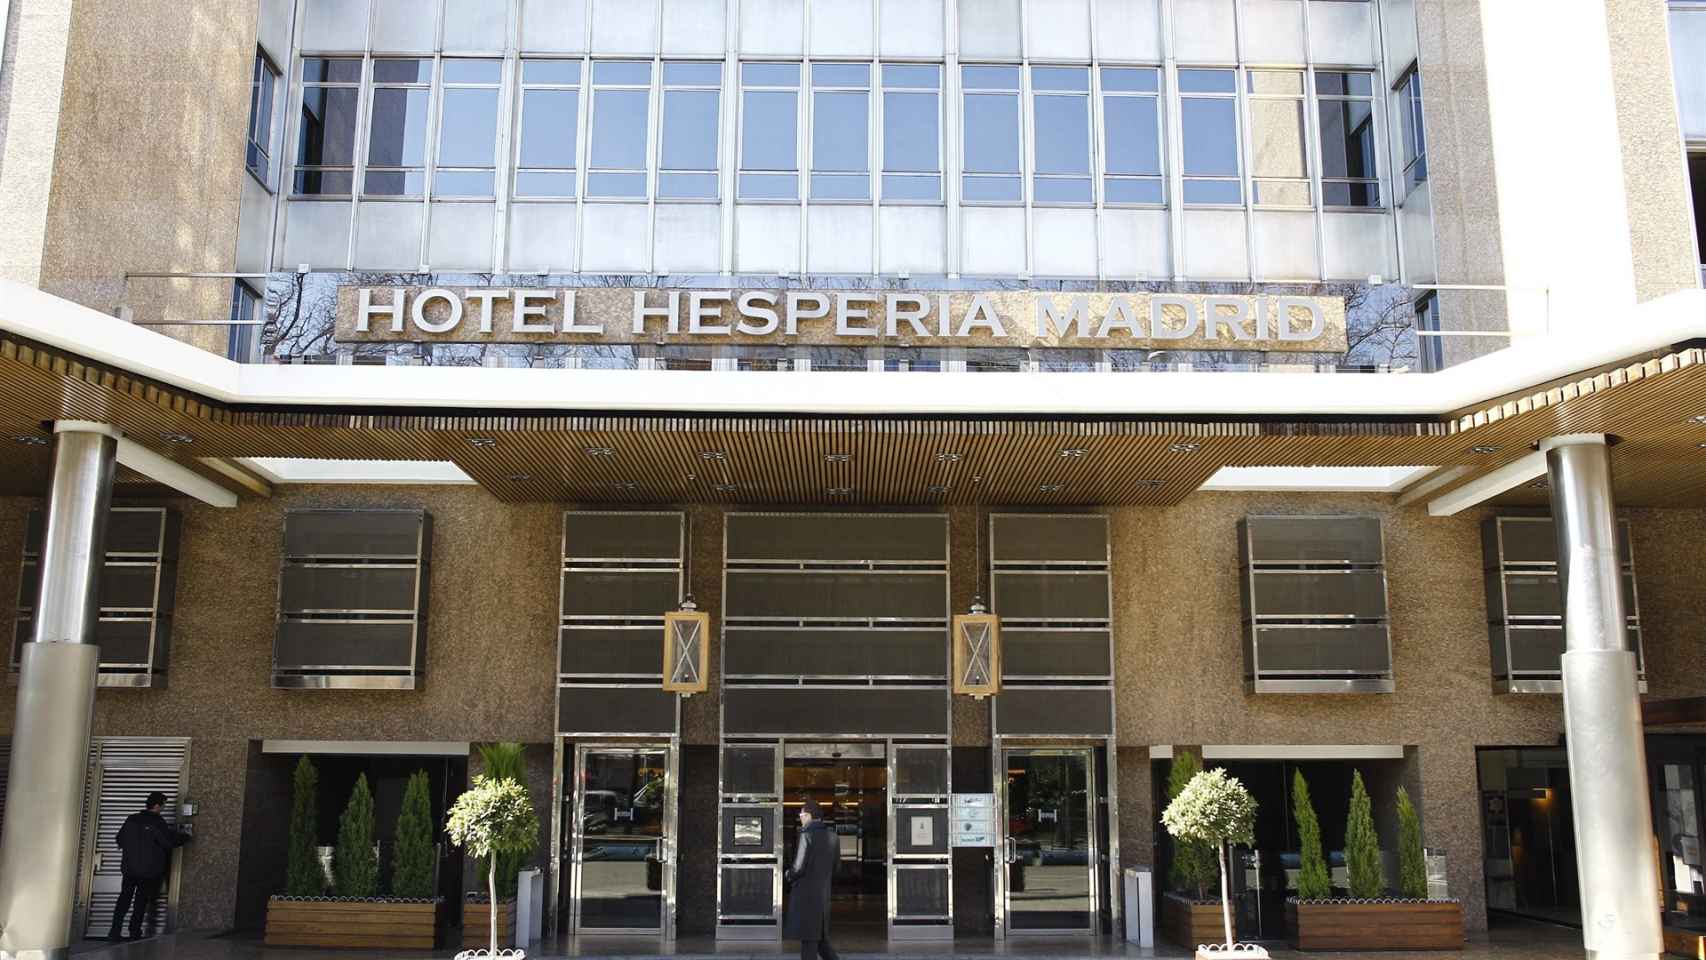 Hotel Hesperia Madrid, uno de los establecimientos de Hesperia que pasa a gestionar NH / EUROPA PRESS